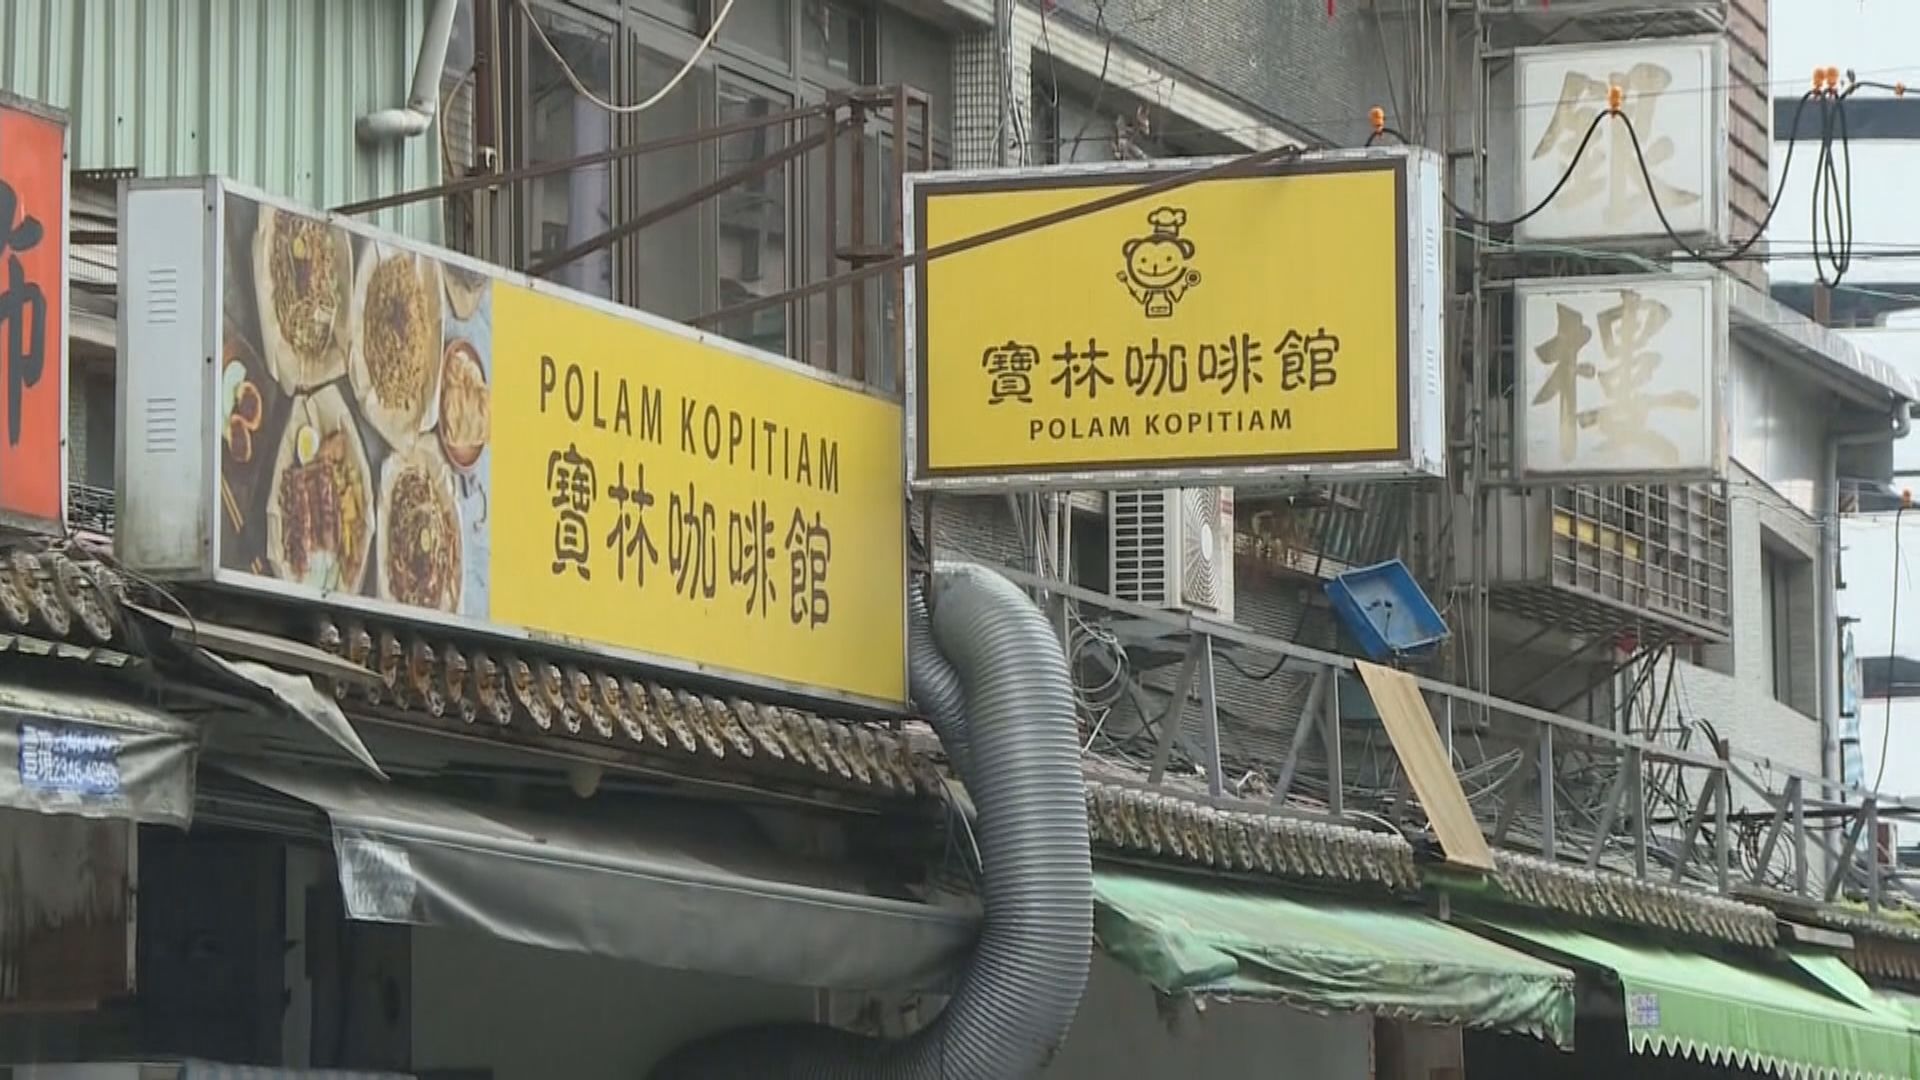 台北餐廳集體中毒案 當局初步認為兩間分店個案不相關